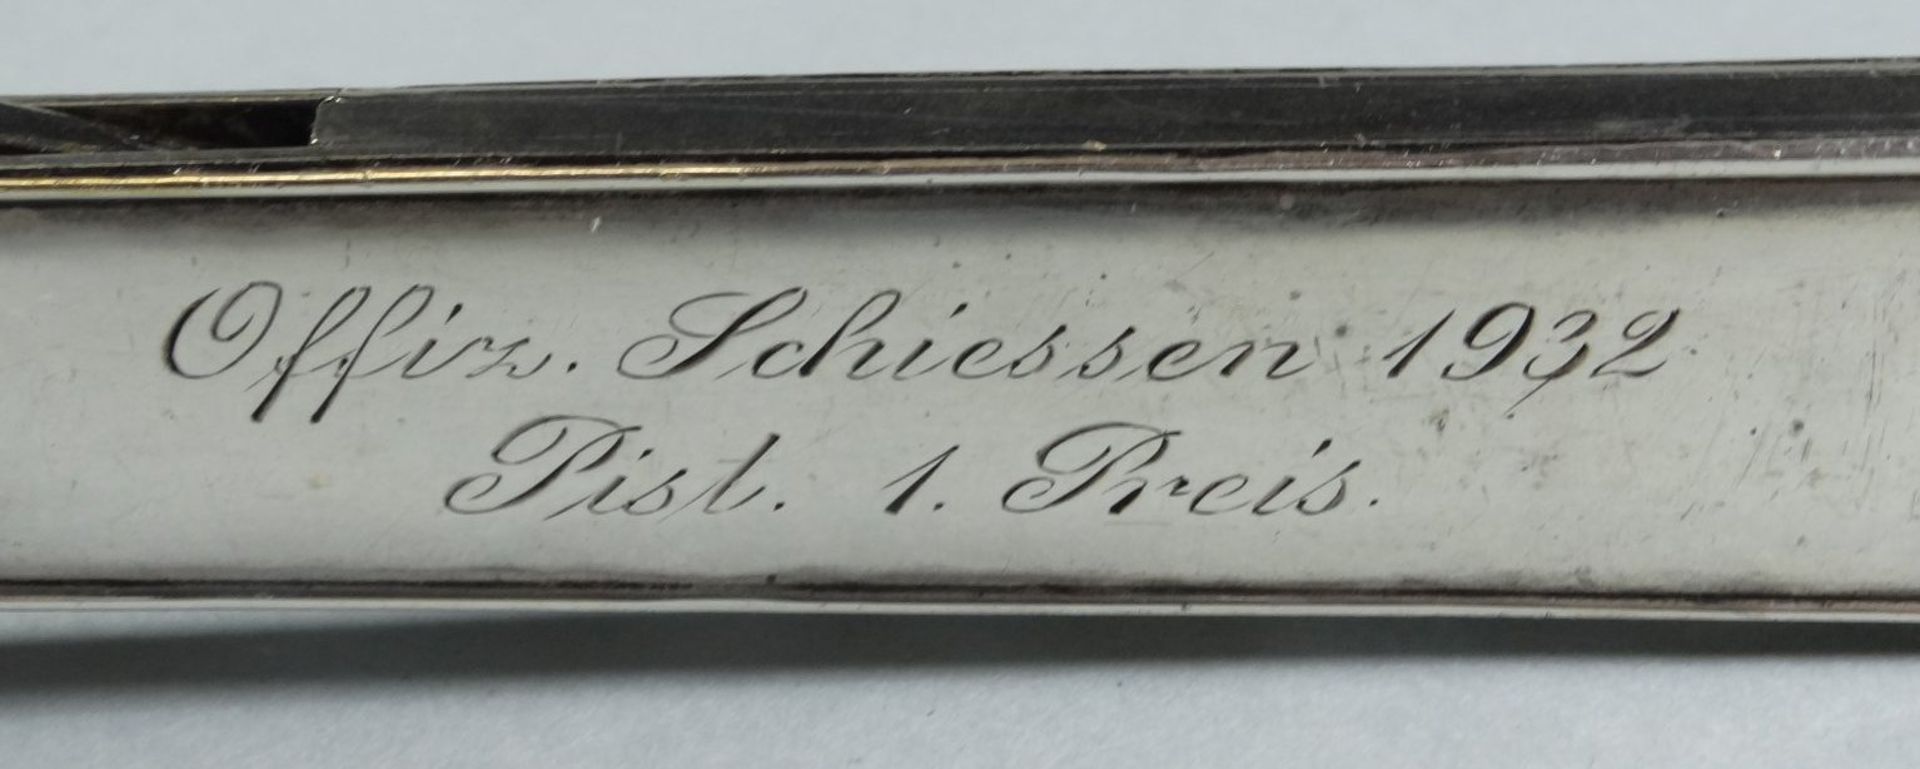 Zigarrenabschneider, Silber-800- Gravur Offz.Scjiessen 1932, Pist. I.Preis, L-17,5 cm, 133 gr. - Bild 2 aus 5